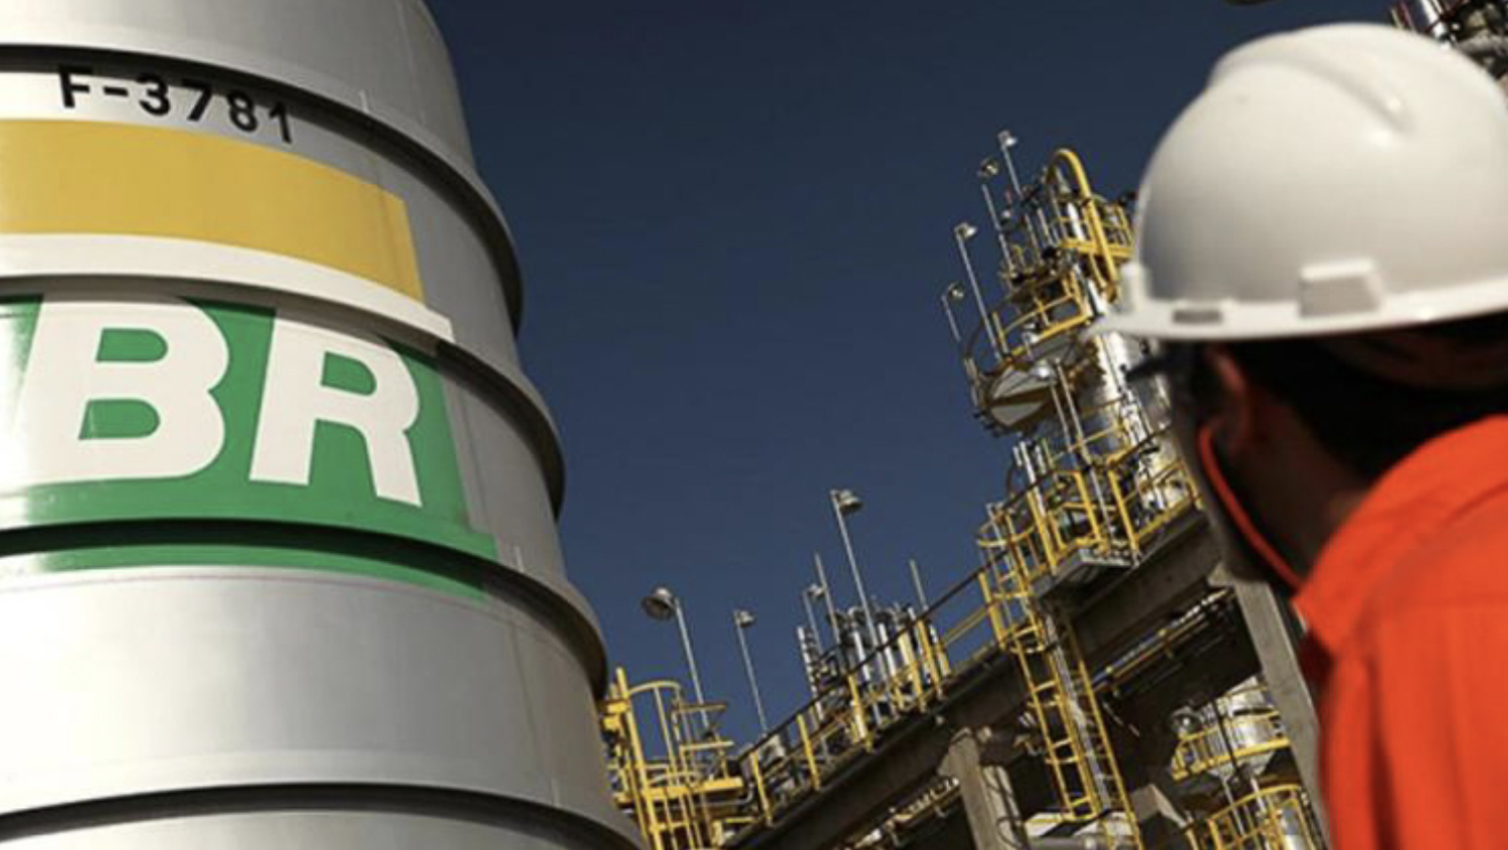 Cade suspende privatização de 5 refinarias da Petrobras